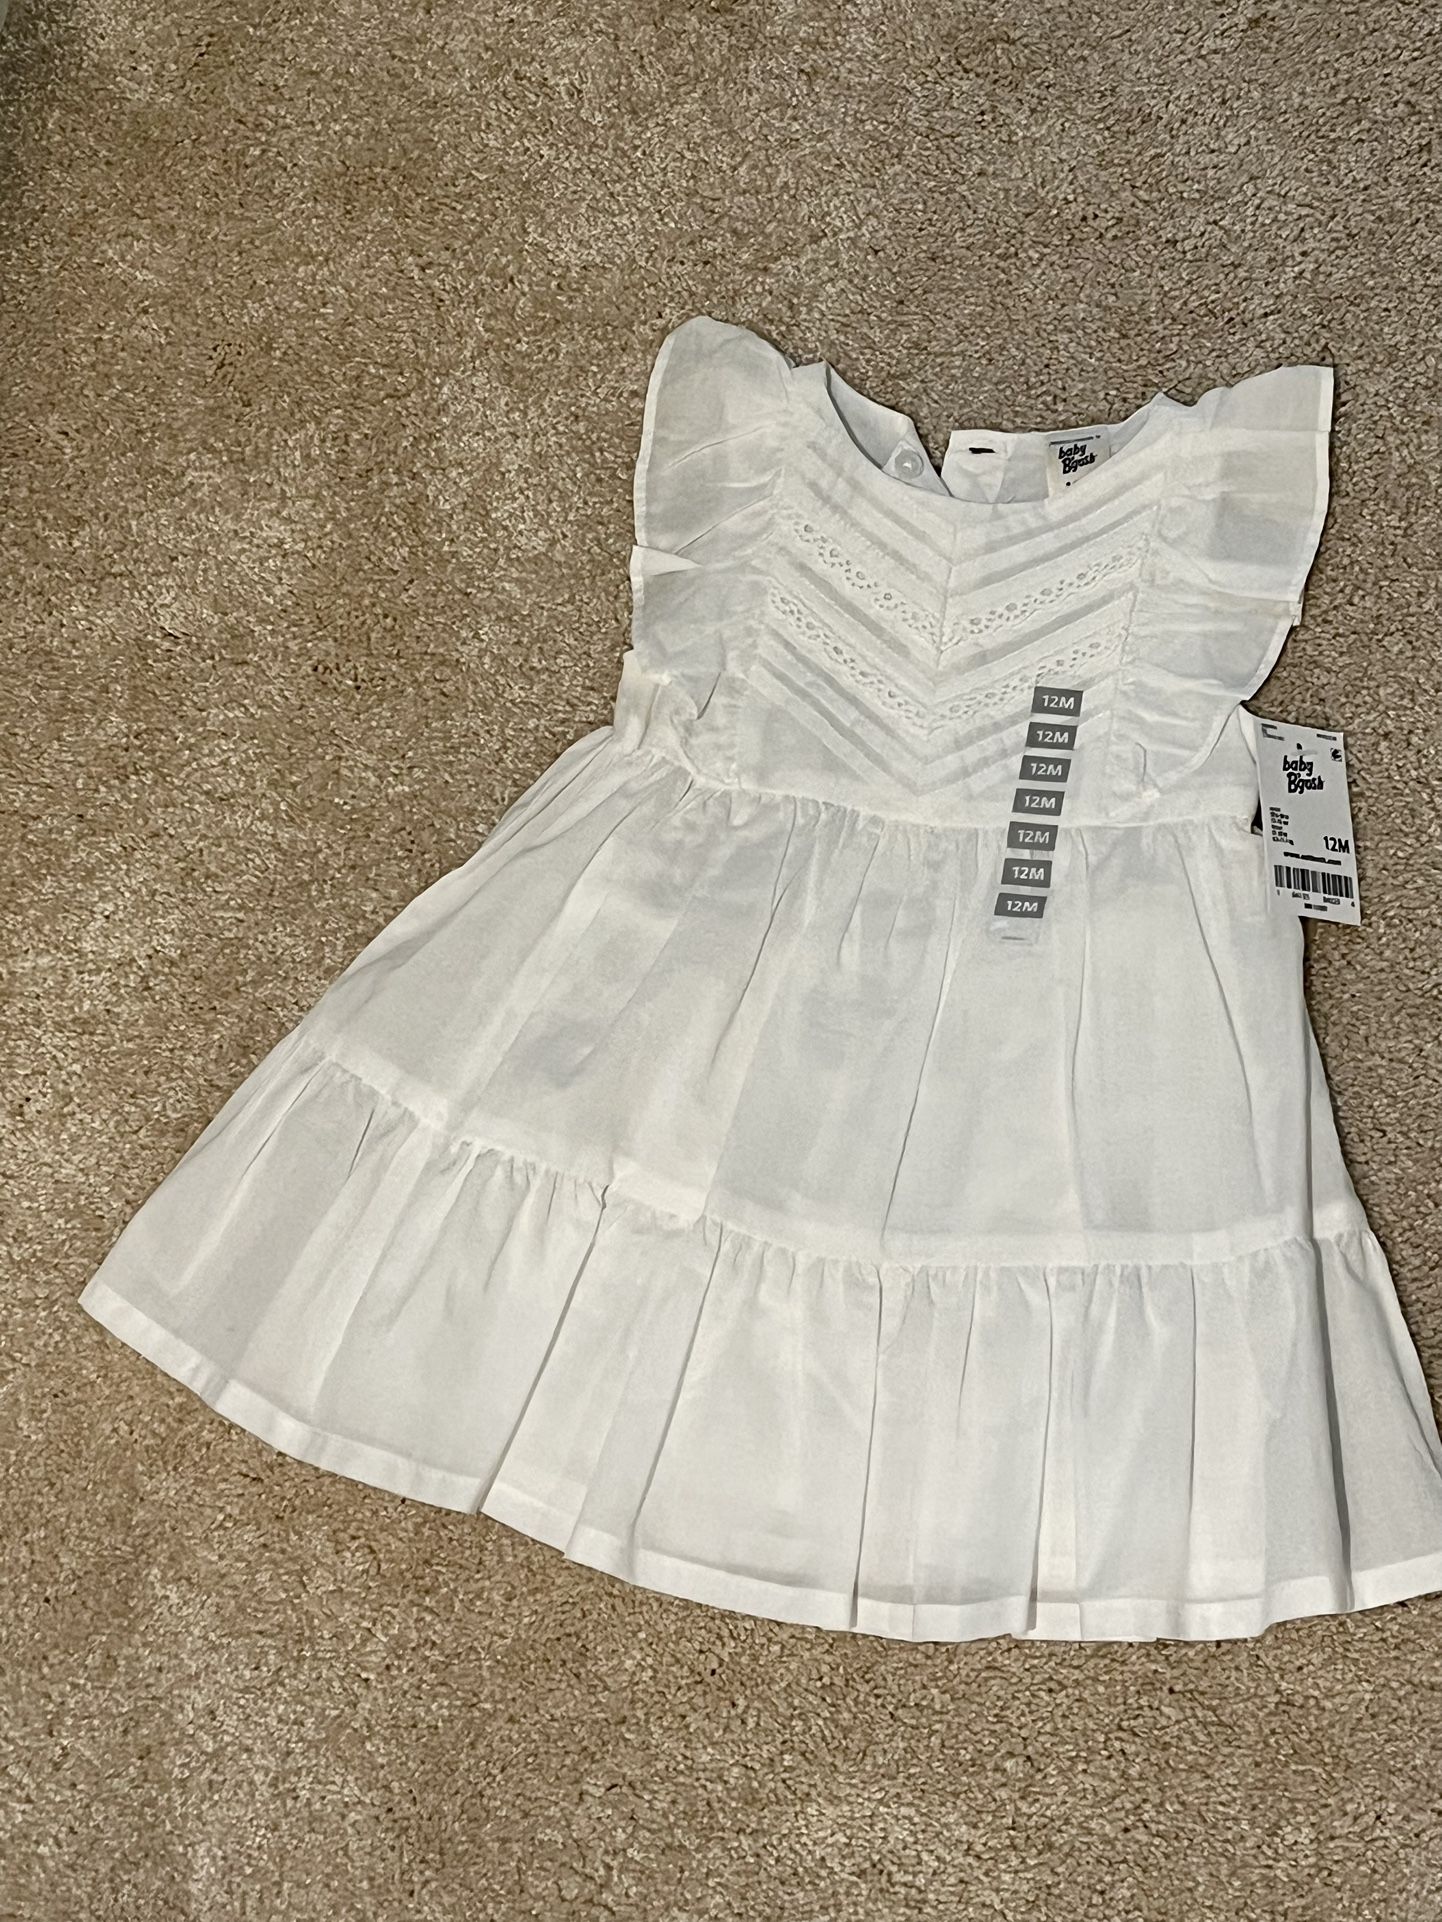 White Eyelet OshKosh Dress - 12M